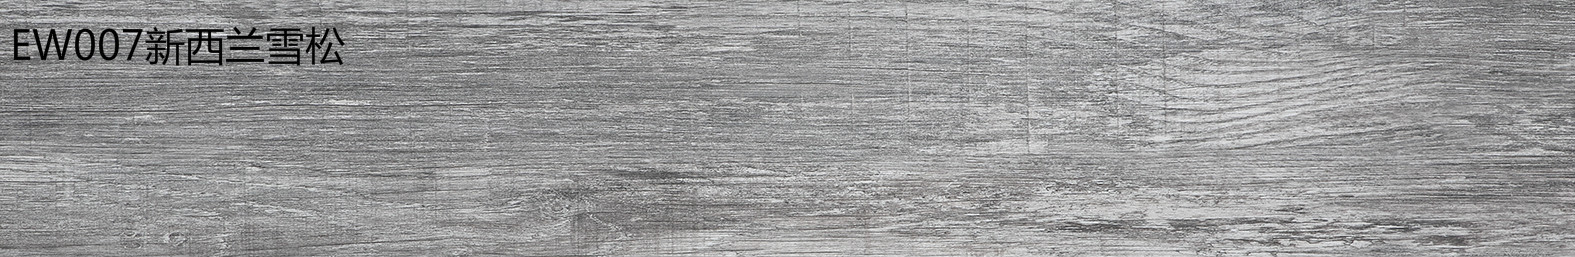 金鼠PVC地板木纹EW007